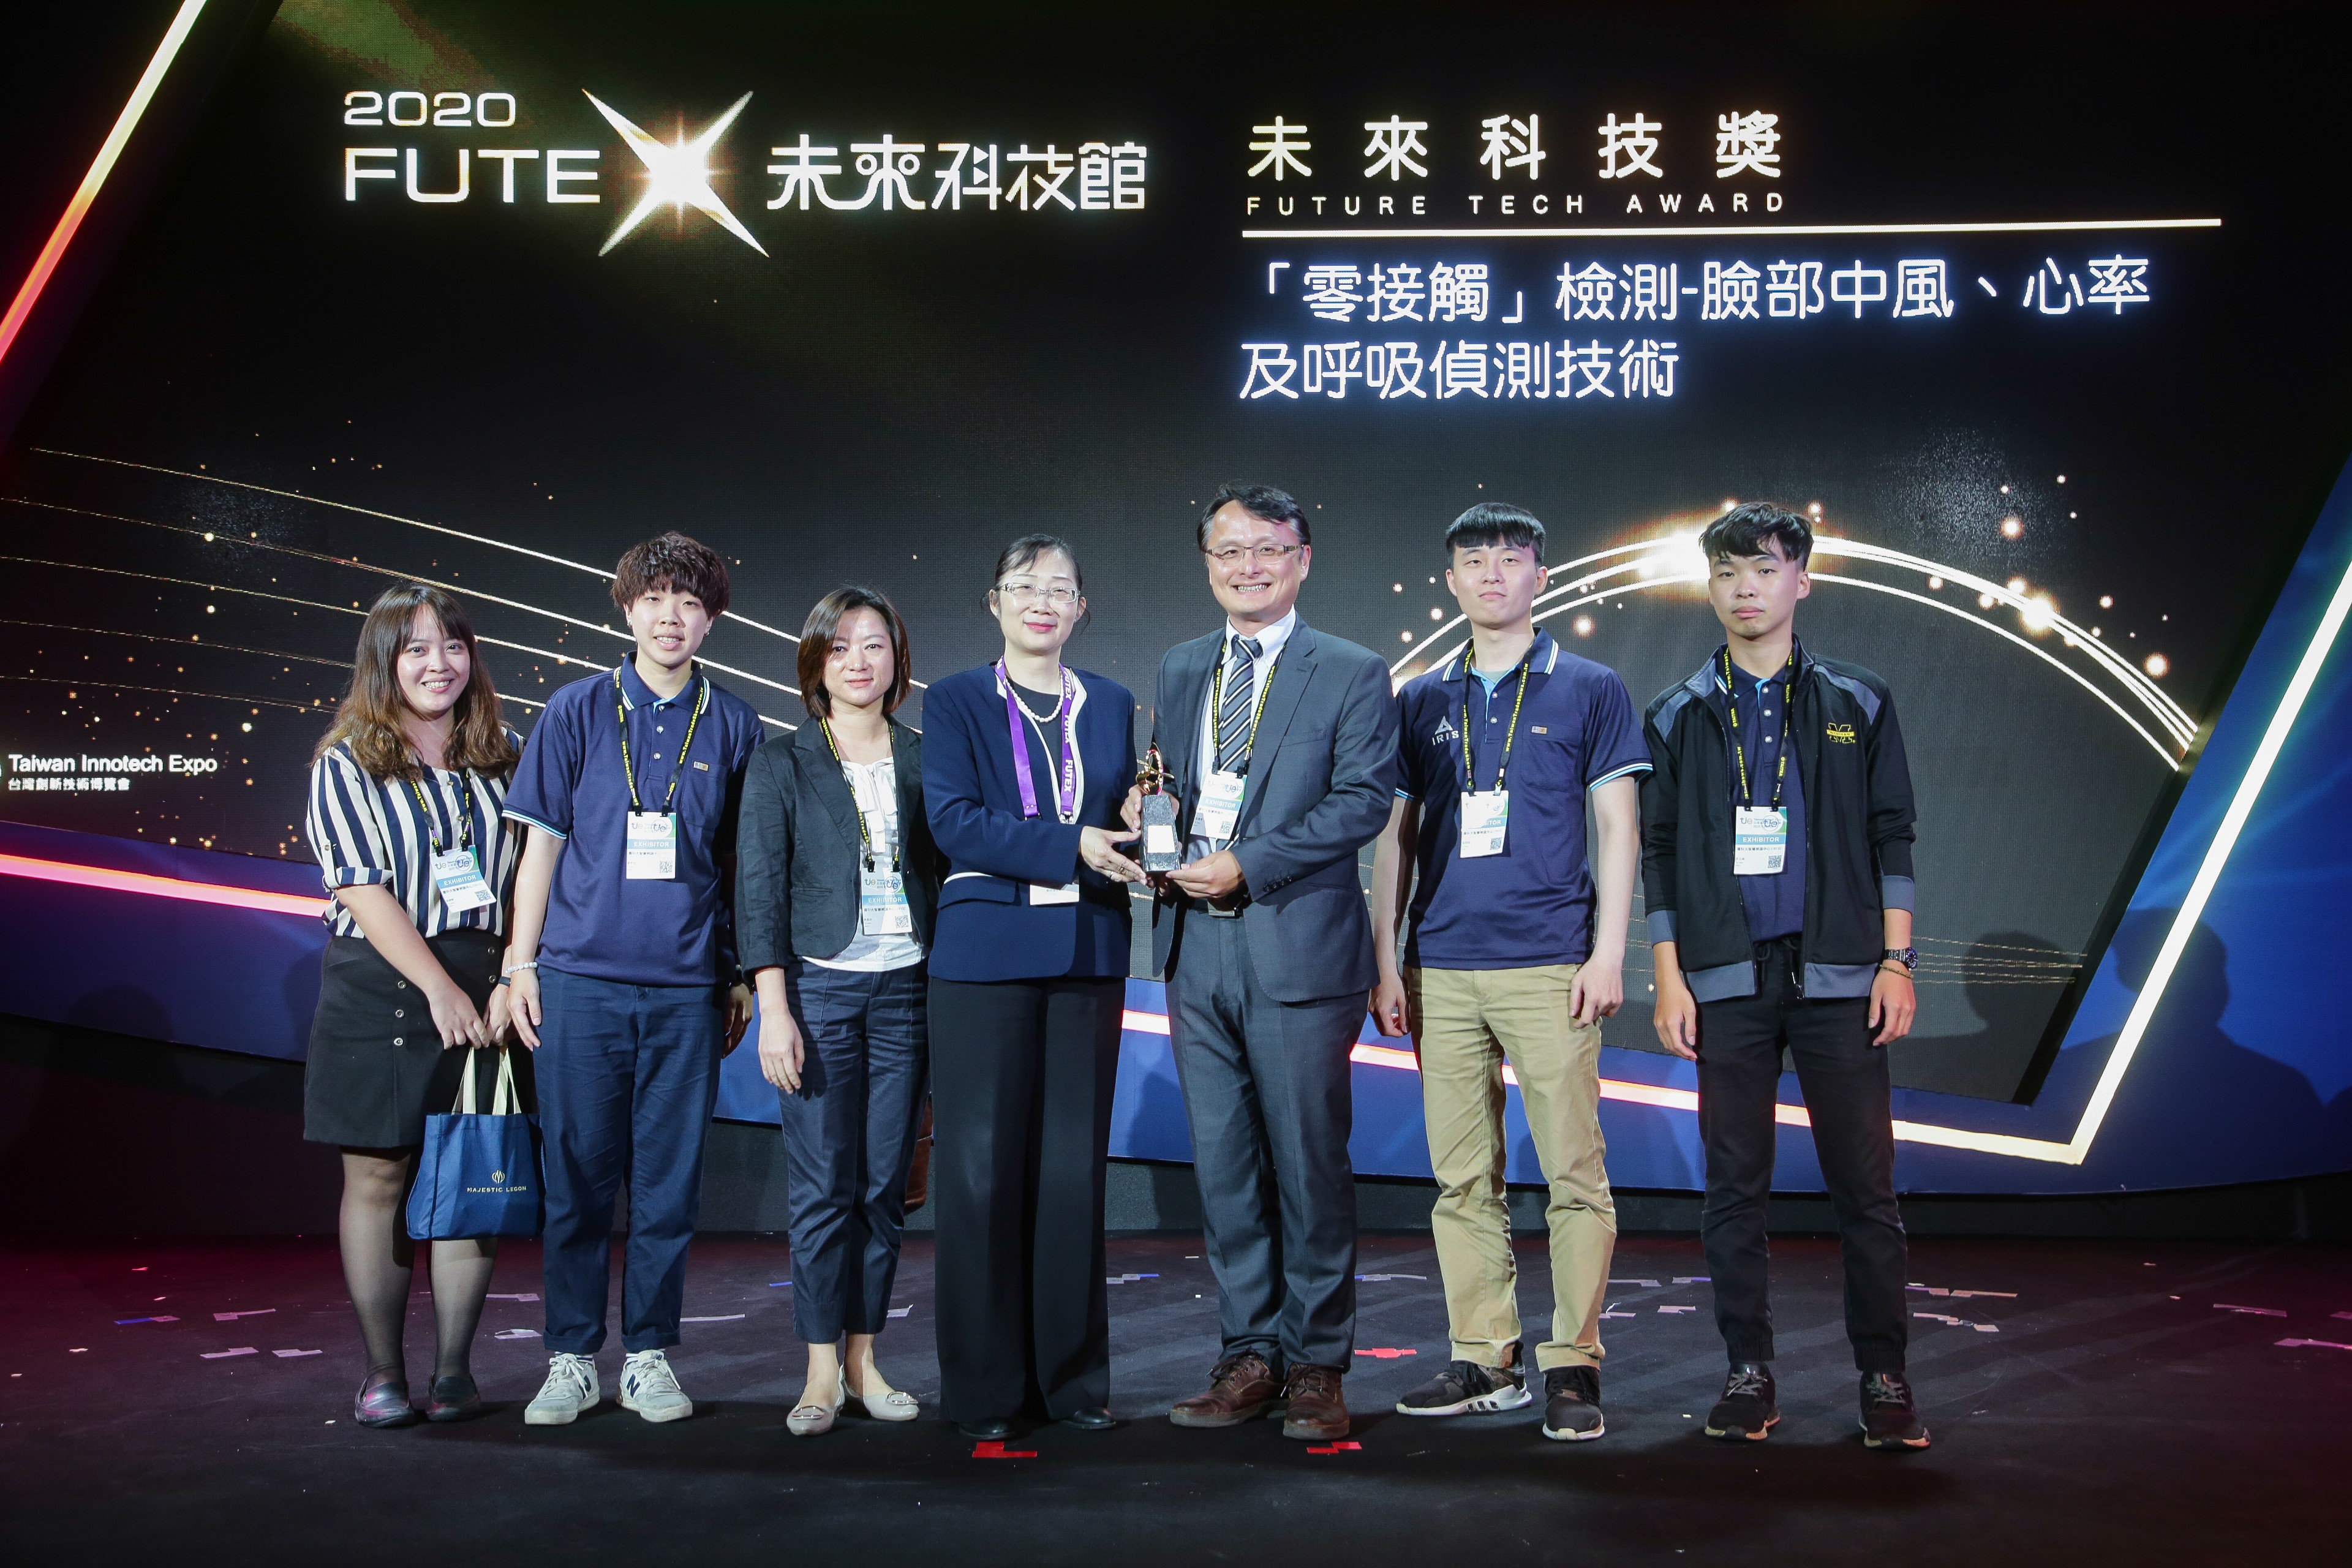 指導學生鄭曼汝、劉湘琦、張閔翔 獲2020科技部未來科技獎